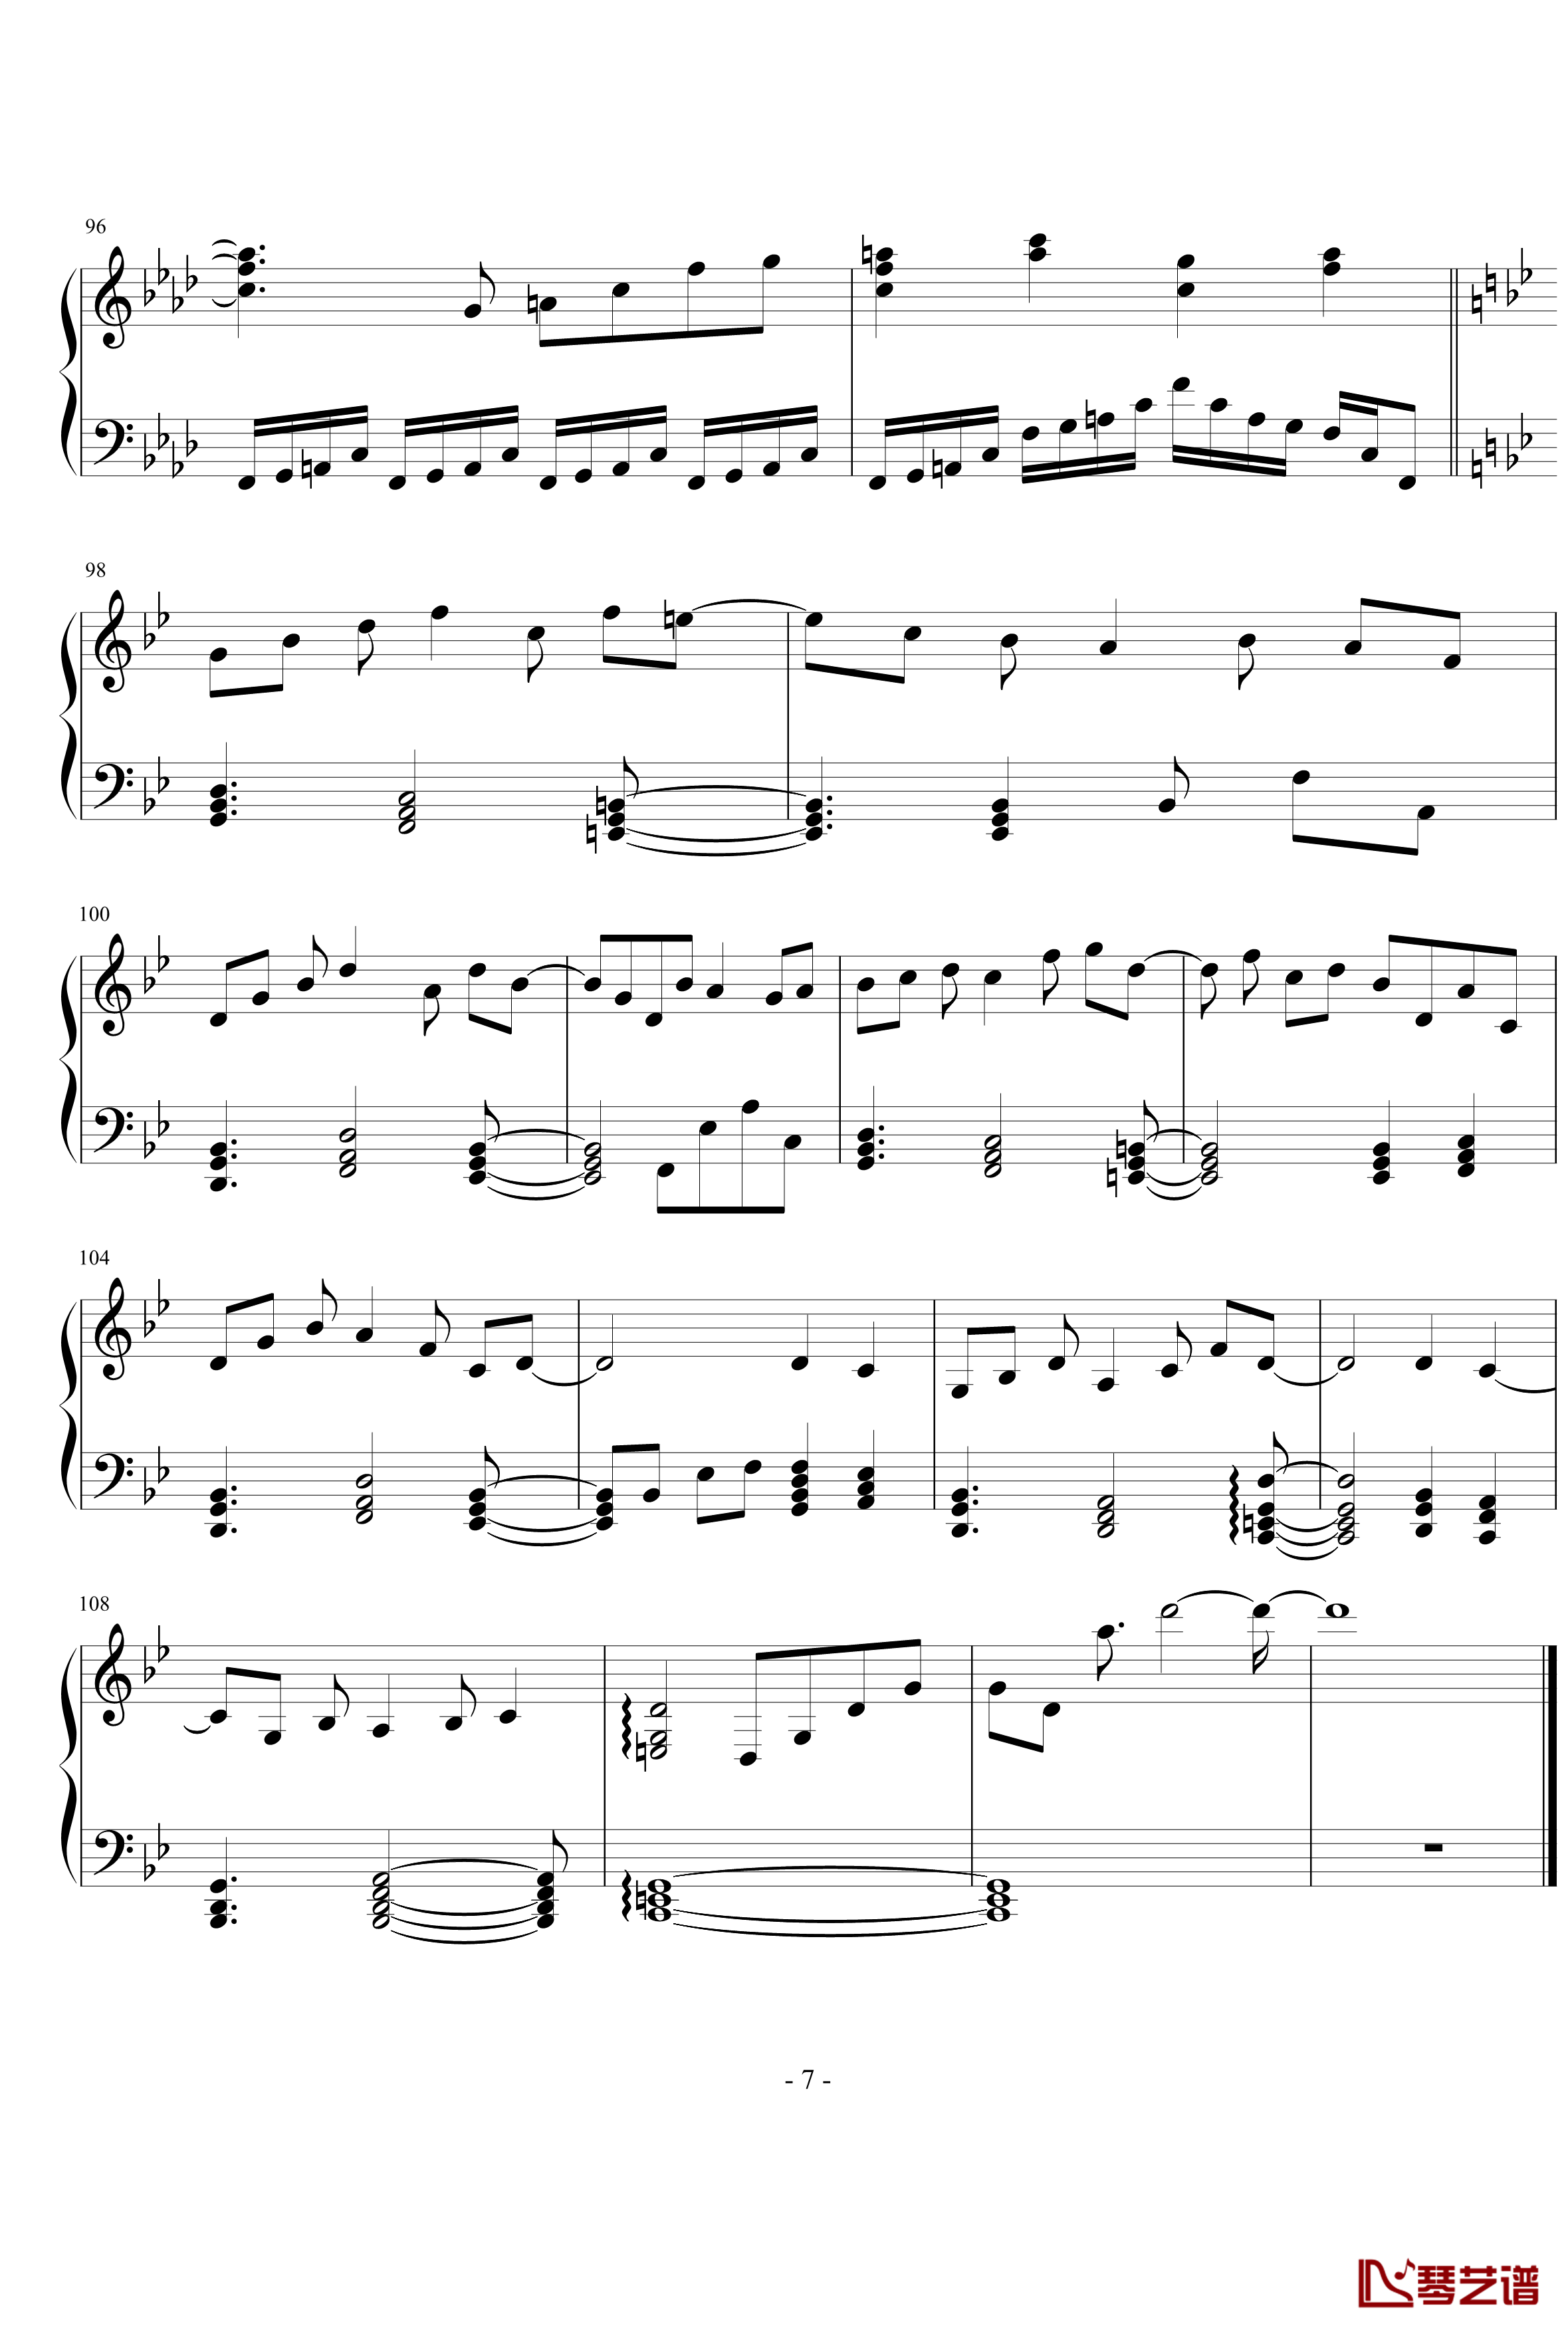 亡灵幻想曲钢琴谱-东方-八云紫7